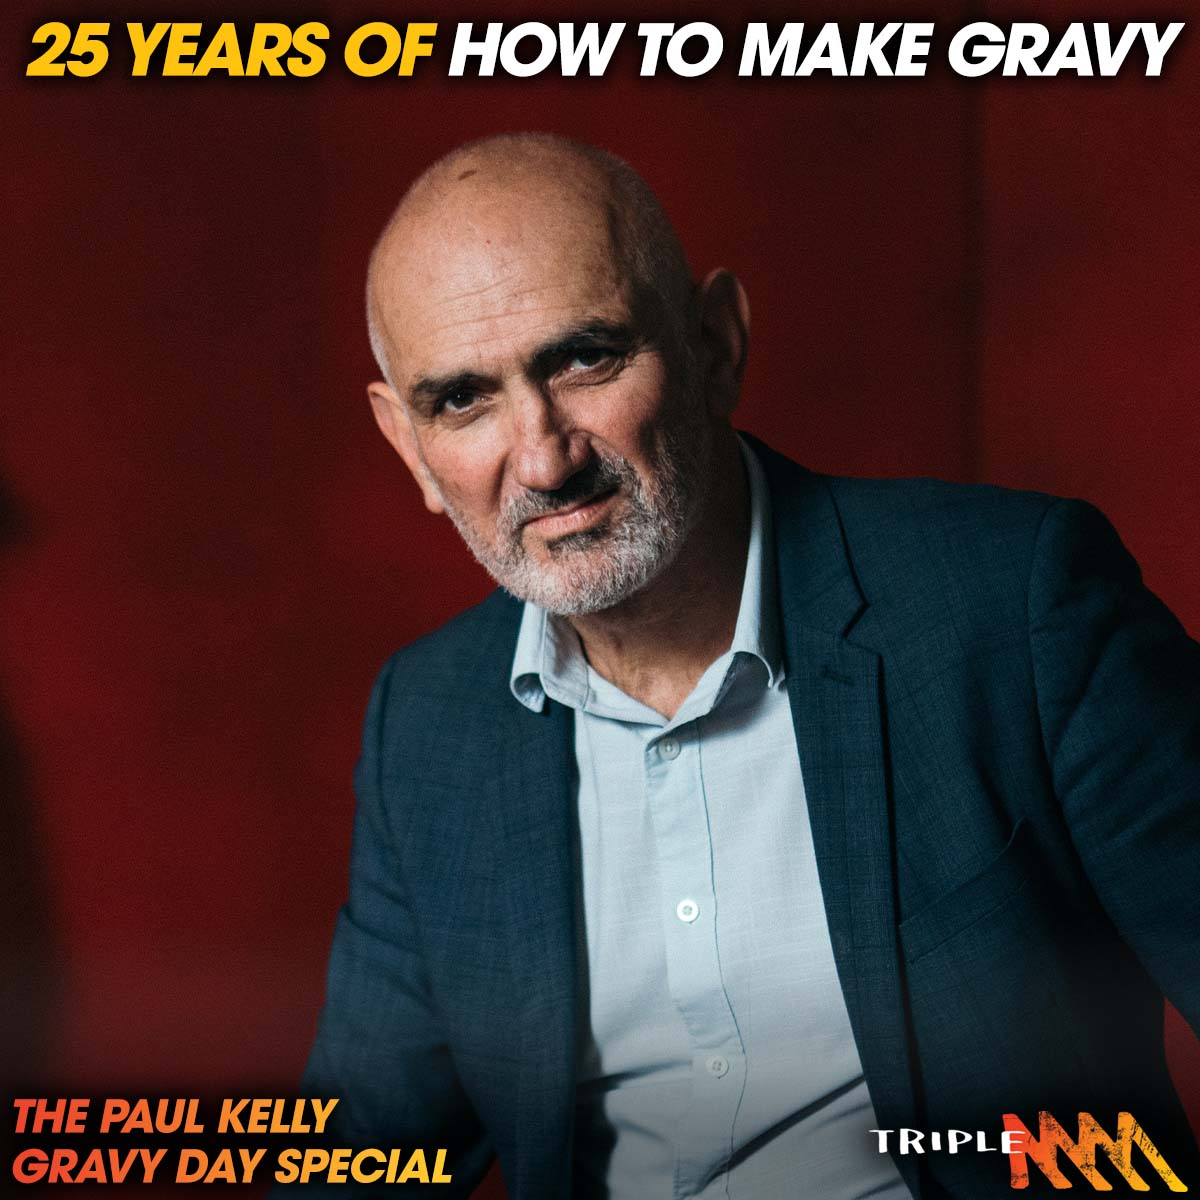 Triple M’s Paul Kelly Gravy Day Special